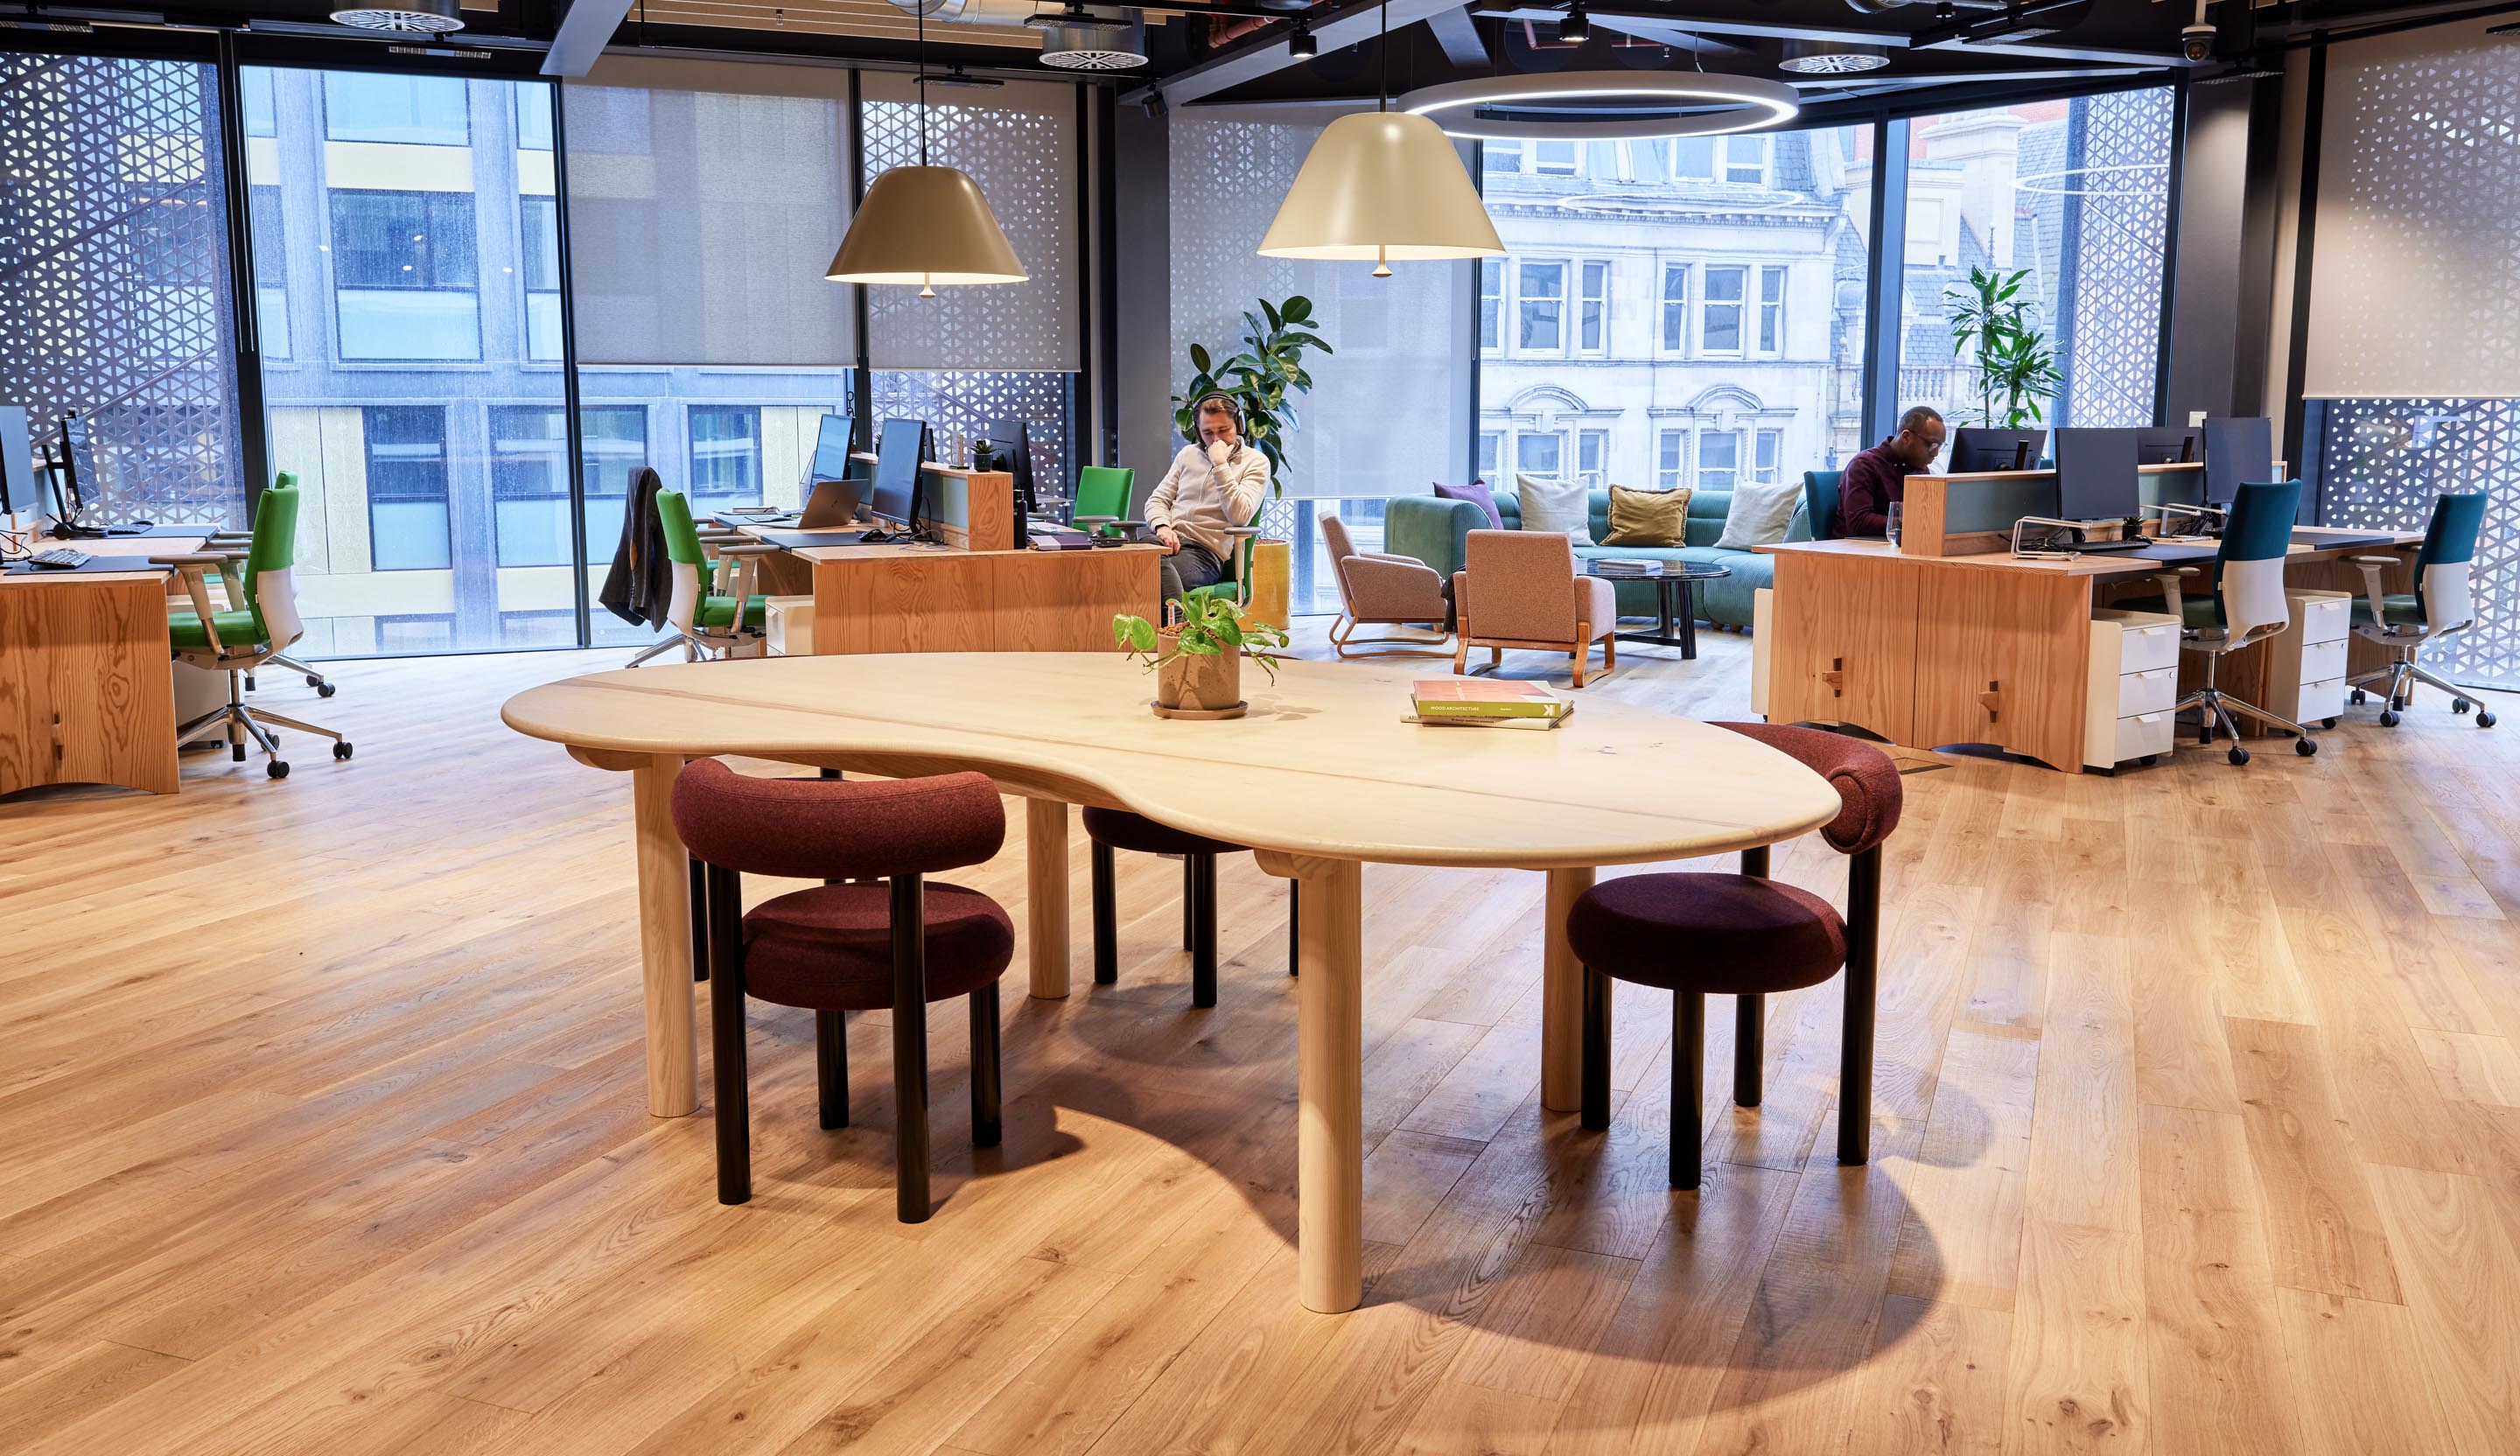 Goldfinger bespoke tables and desks at Scape for Nicola Harding